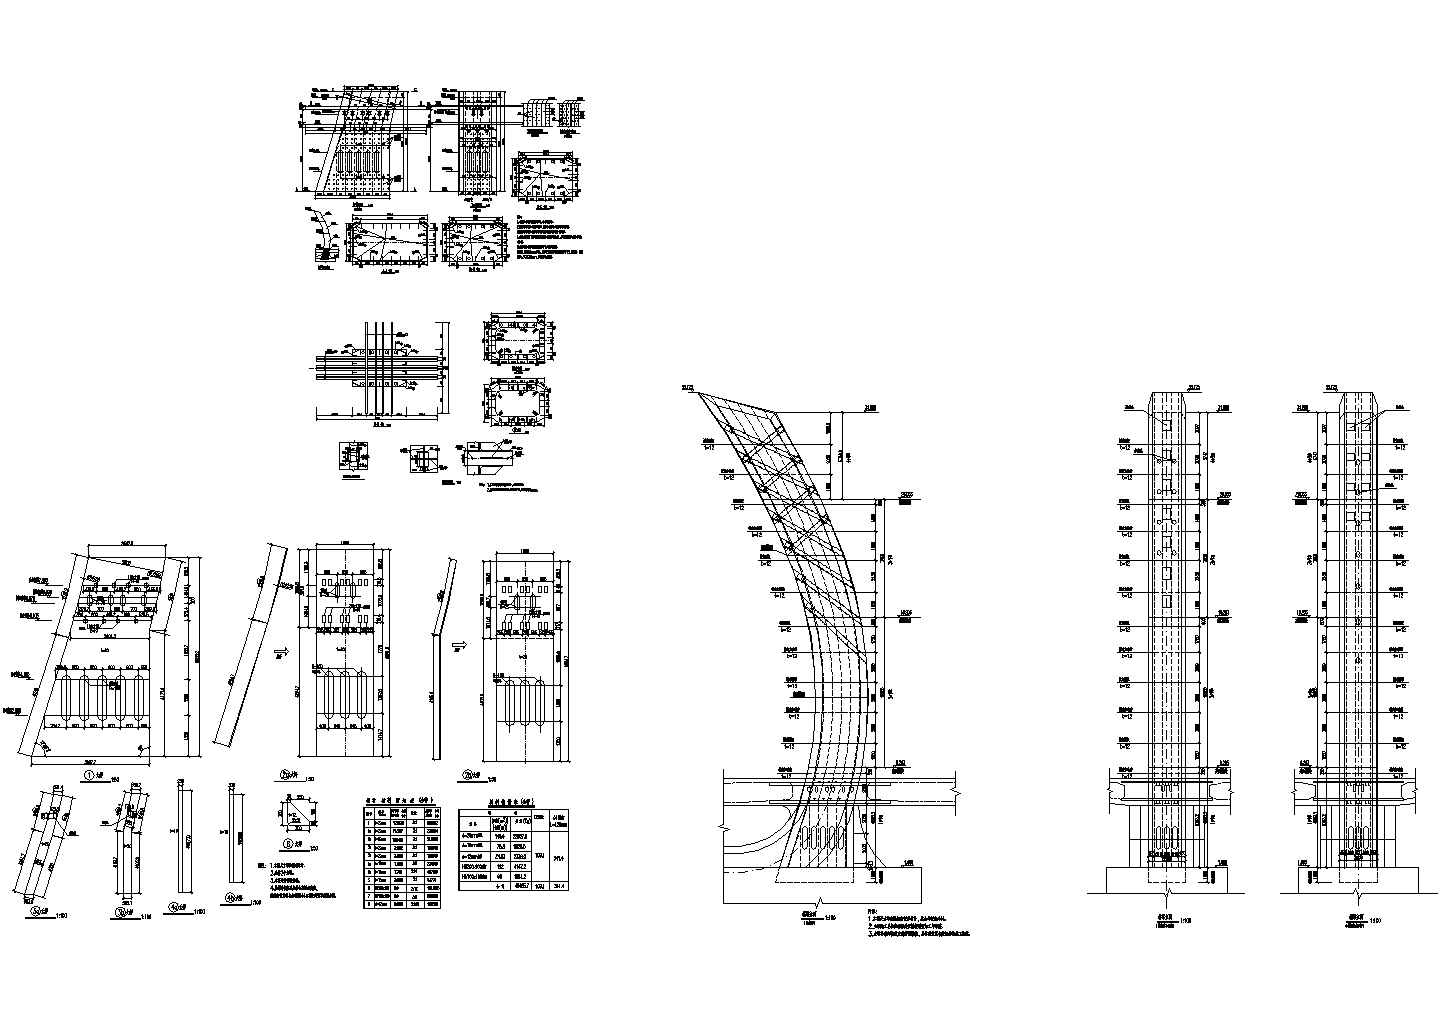 95m长独塔预应力混凝土斜拉桥主塔1#节段节点详图设计